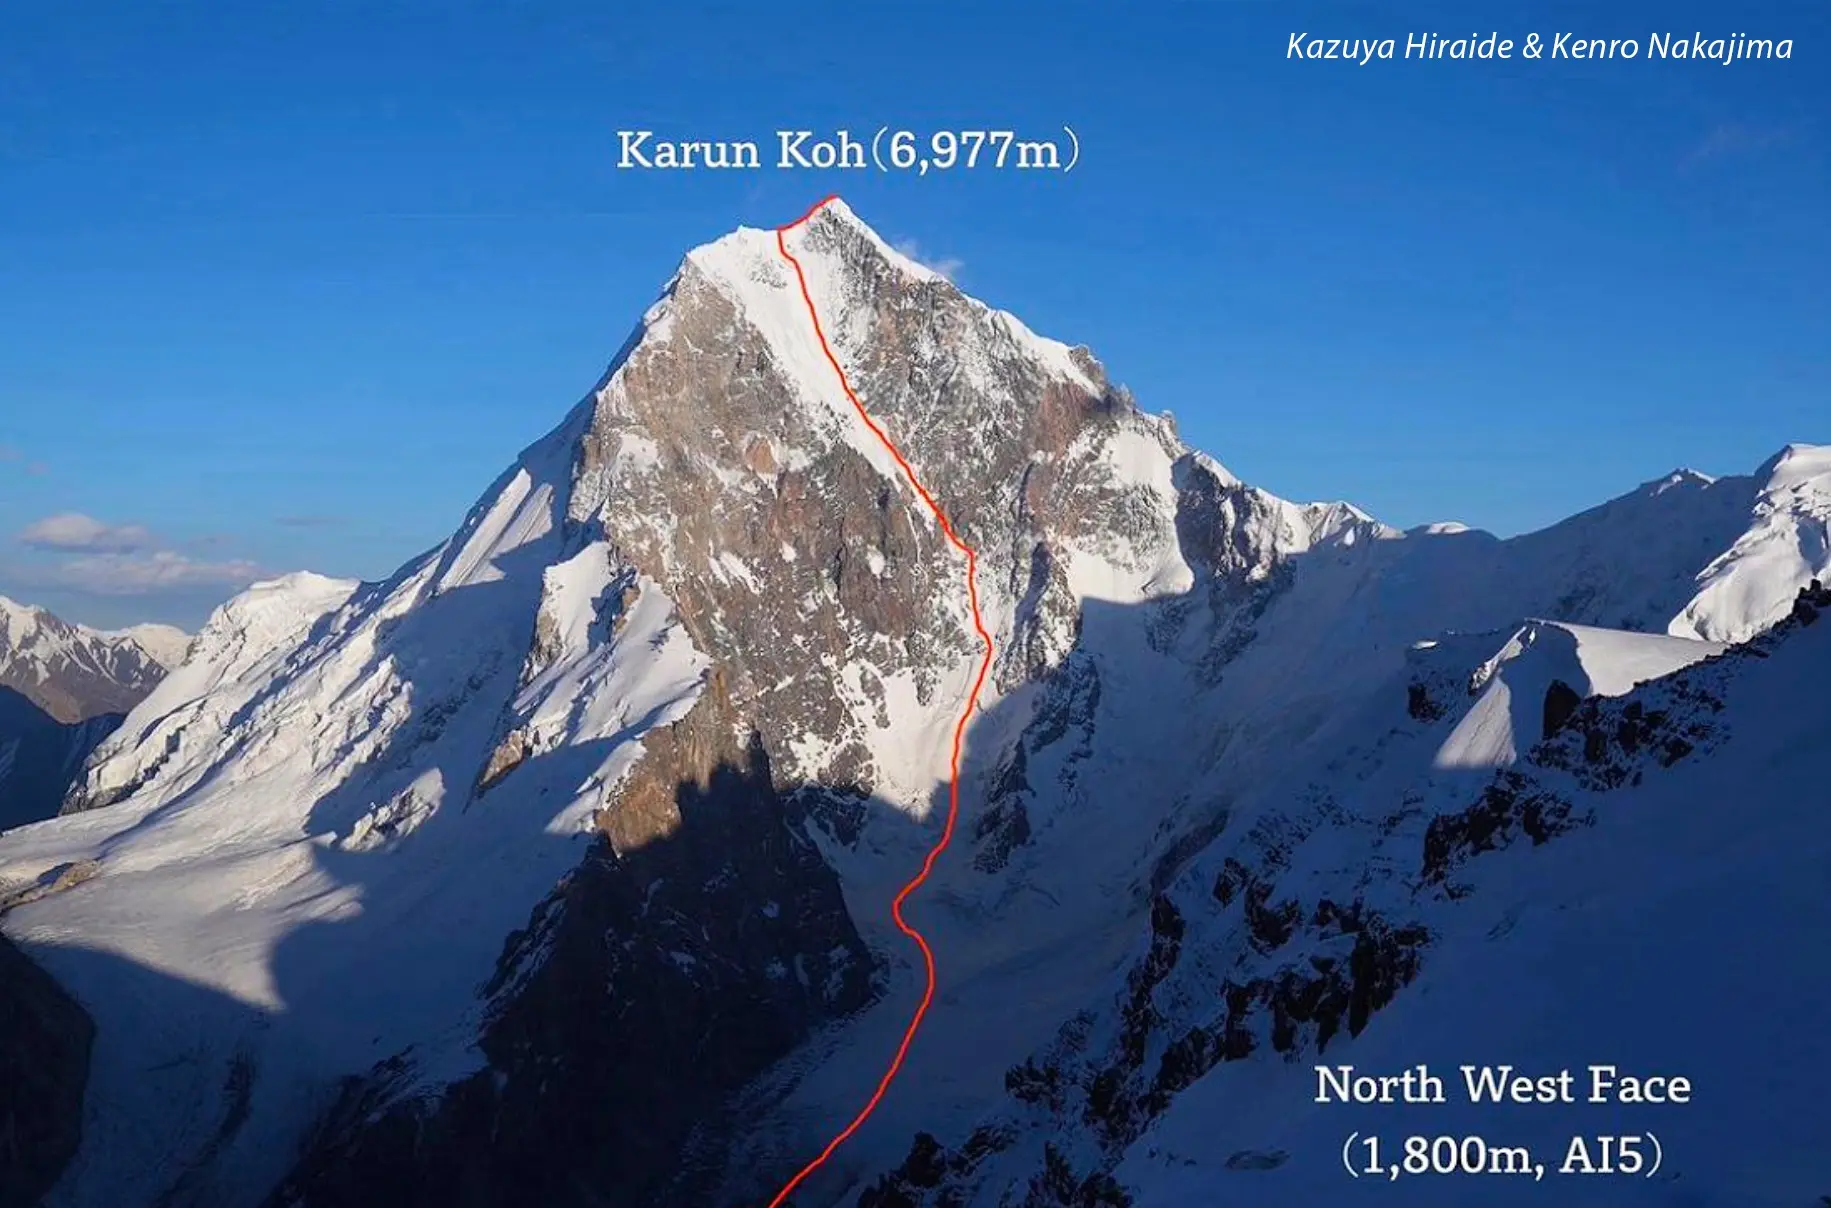 перший маршрут на північно-західній стіні гори Карун-Кох в Пакистані. Кацуя Хірайде (Kazuya Hiraide) та Кенро Накаджима (Kenro Nakajima). вересень 2022 року